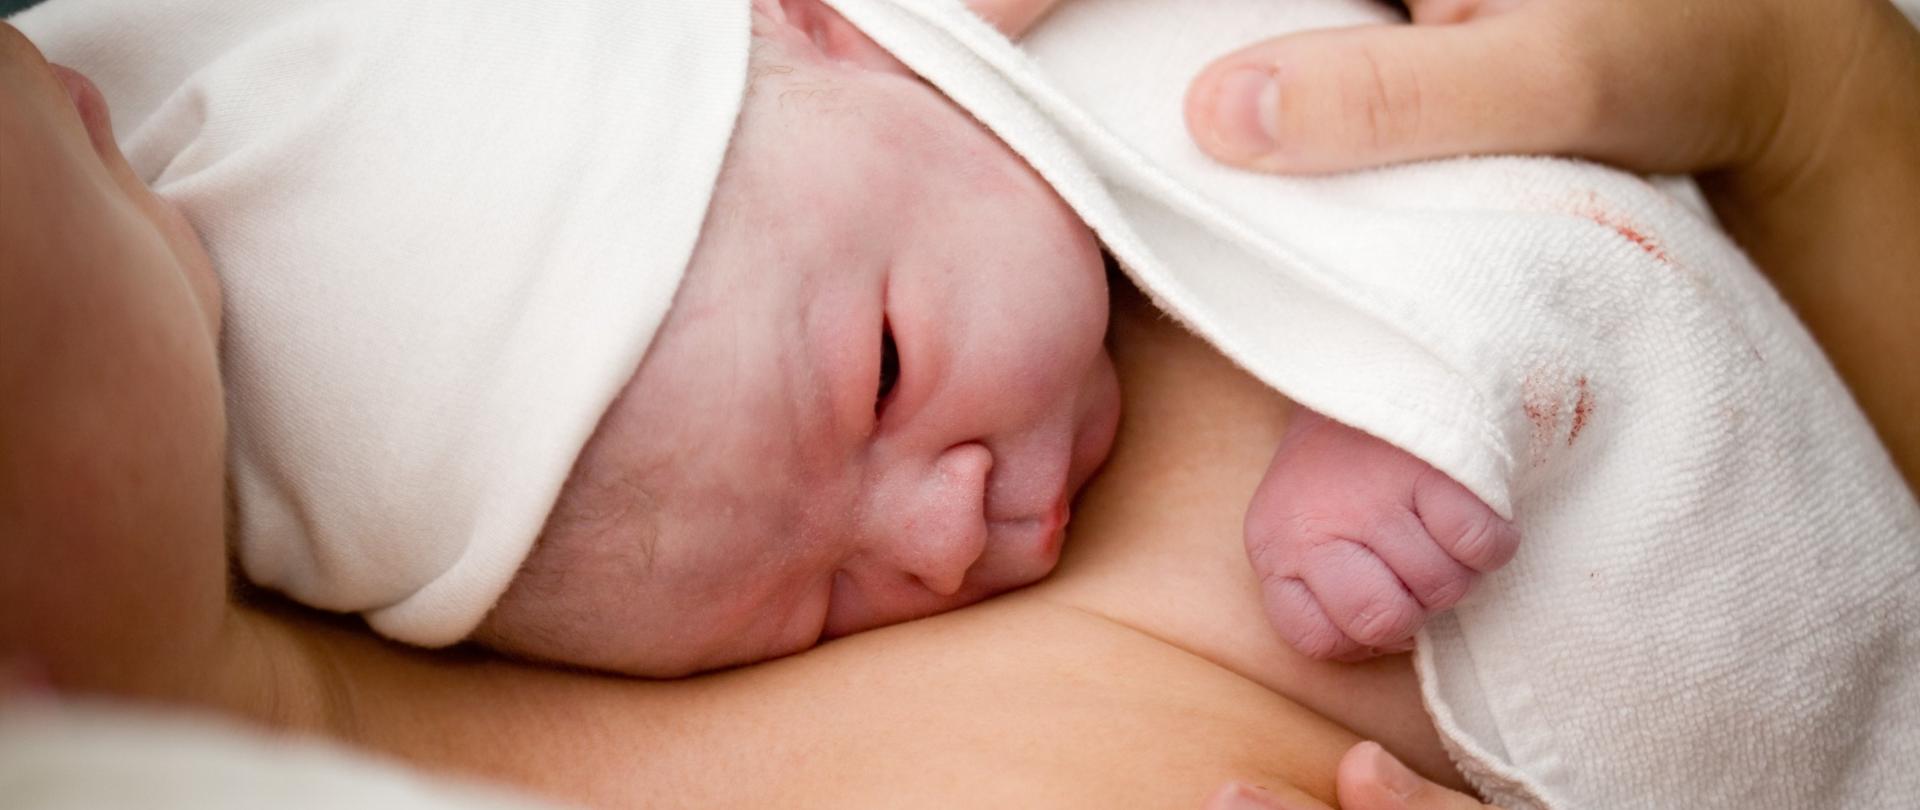 Matka skóra do skóry przytula nowonarodzone dziecko